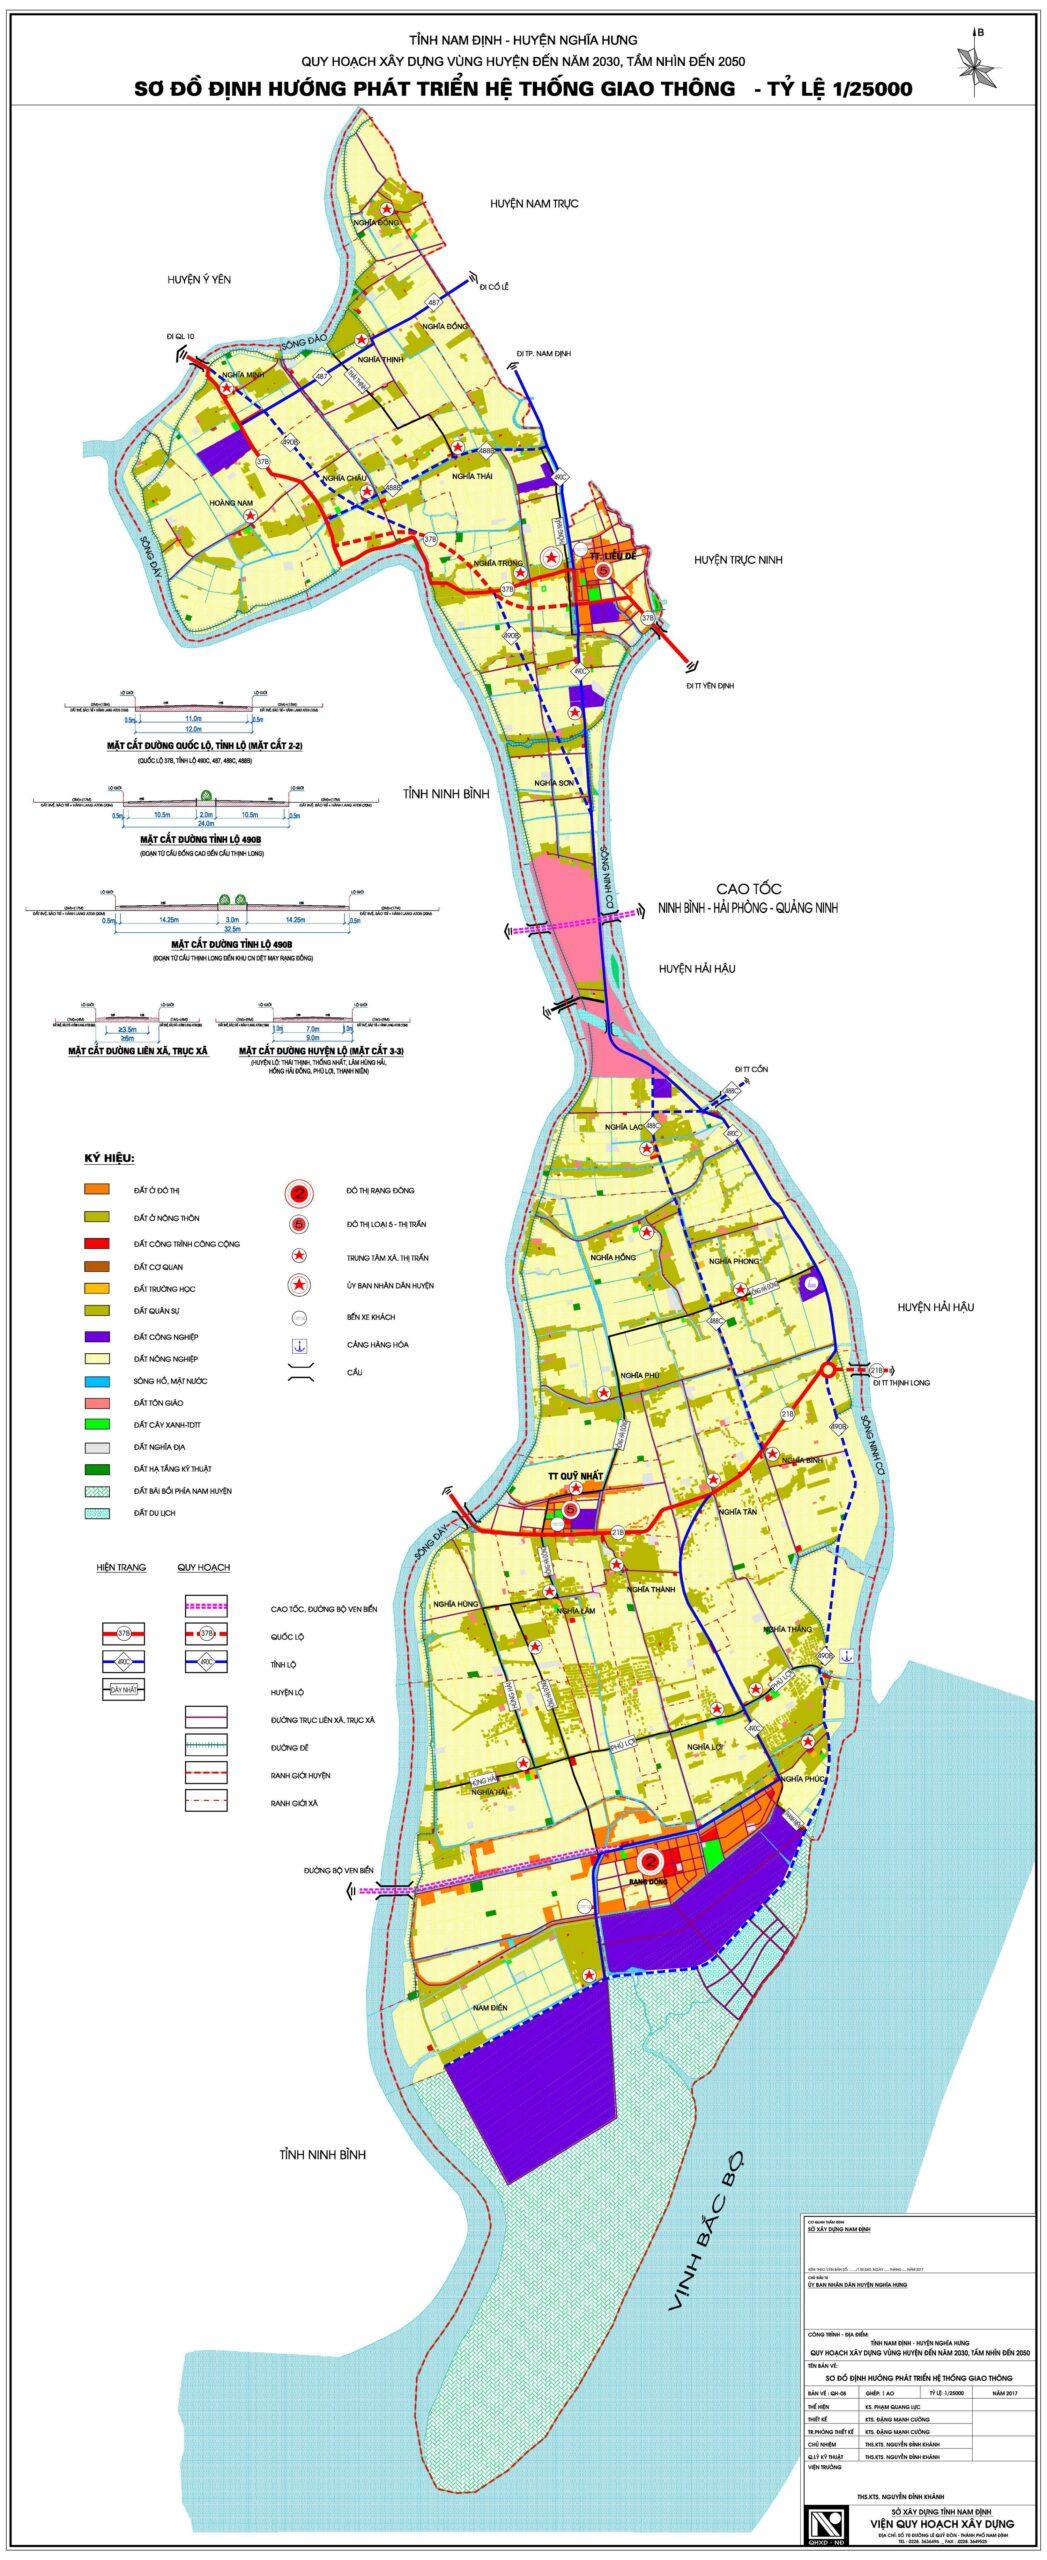 bản đồ quy hoạch giao thông tỉnh nam định